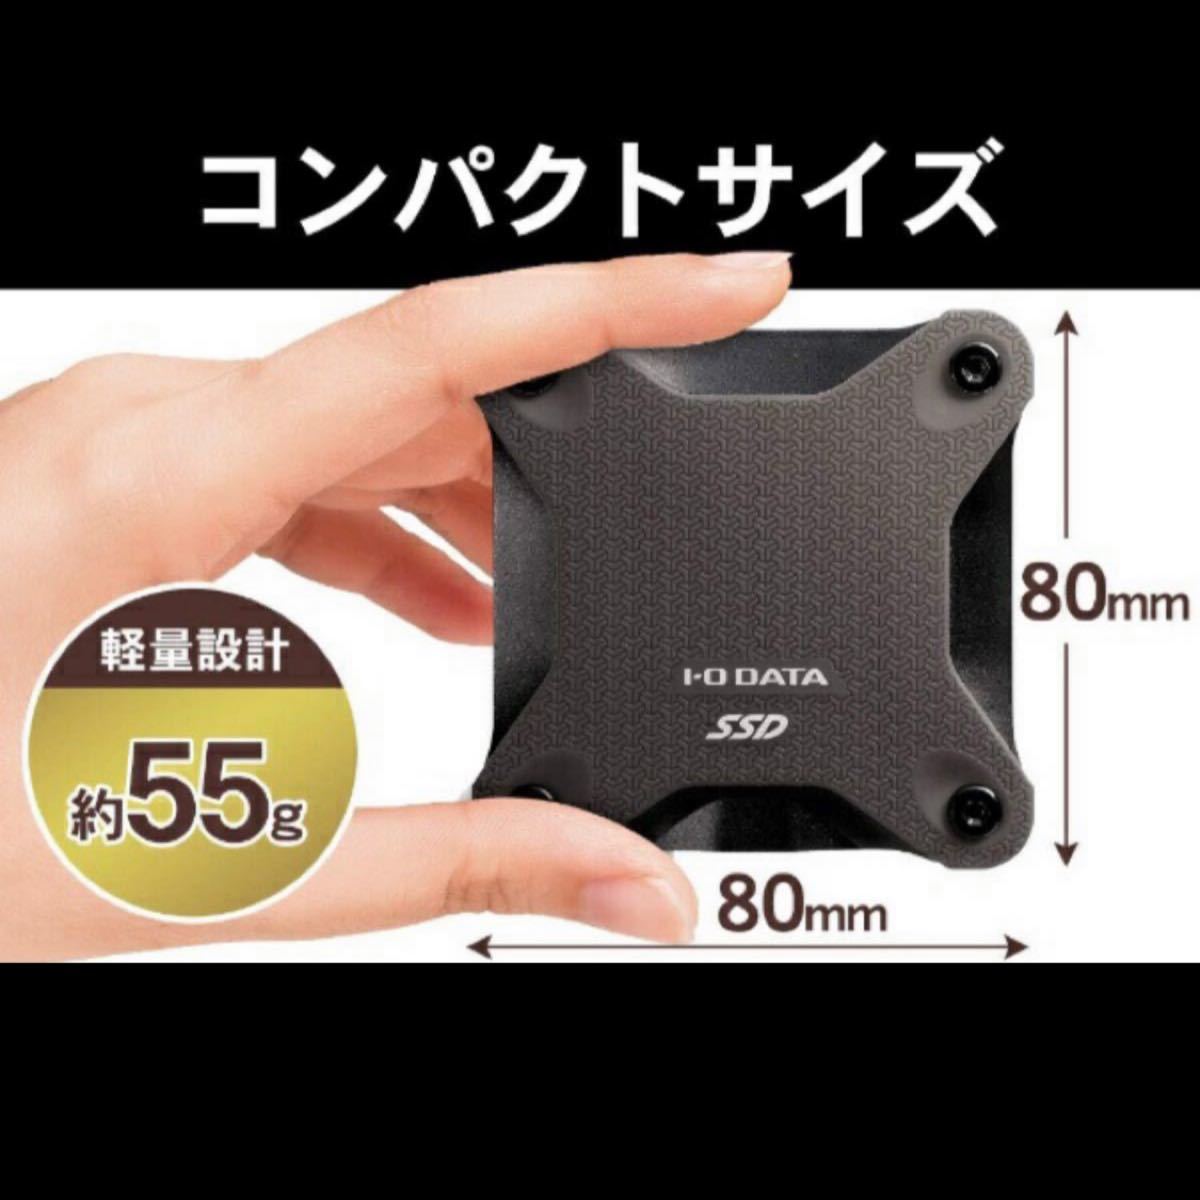 【新品未開封】外付けSSD I-O　DATA　アイ・オー・データ SSD ワインレッド  500GB USB3.1